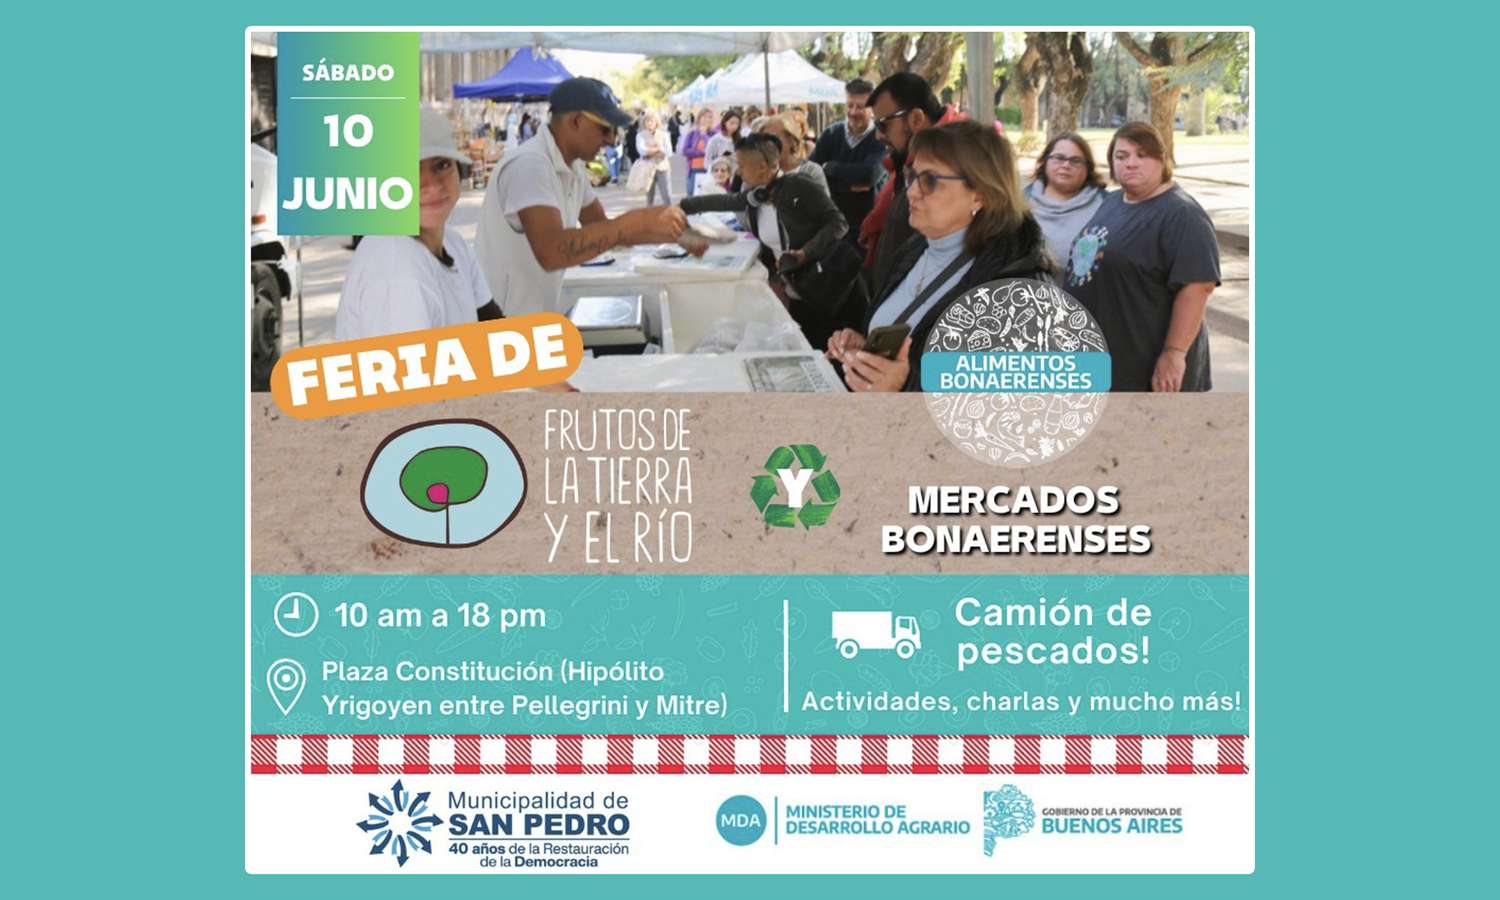 Mercados Bonaerenses y Frutos de la Tierra y el Río en Plaza Constitución este sábado 10 de junio